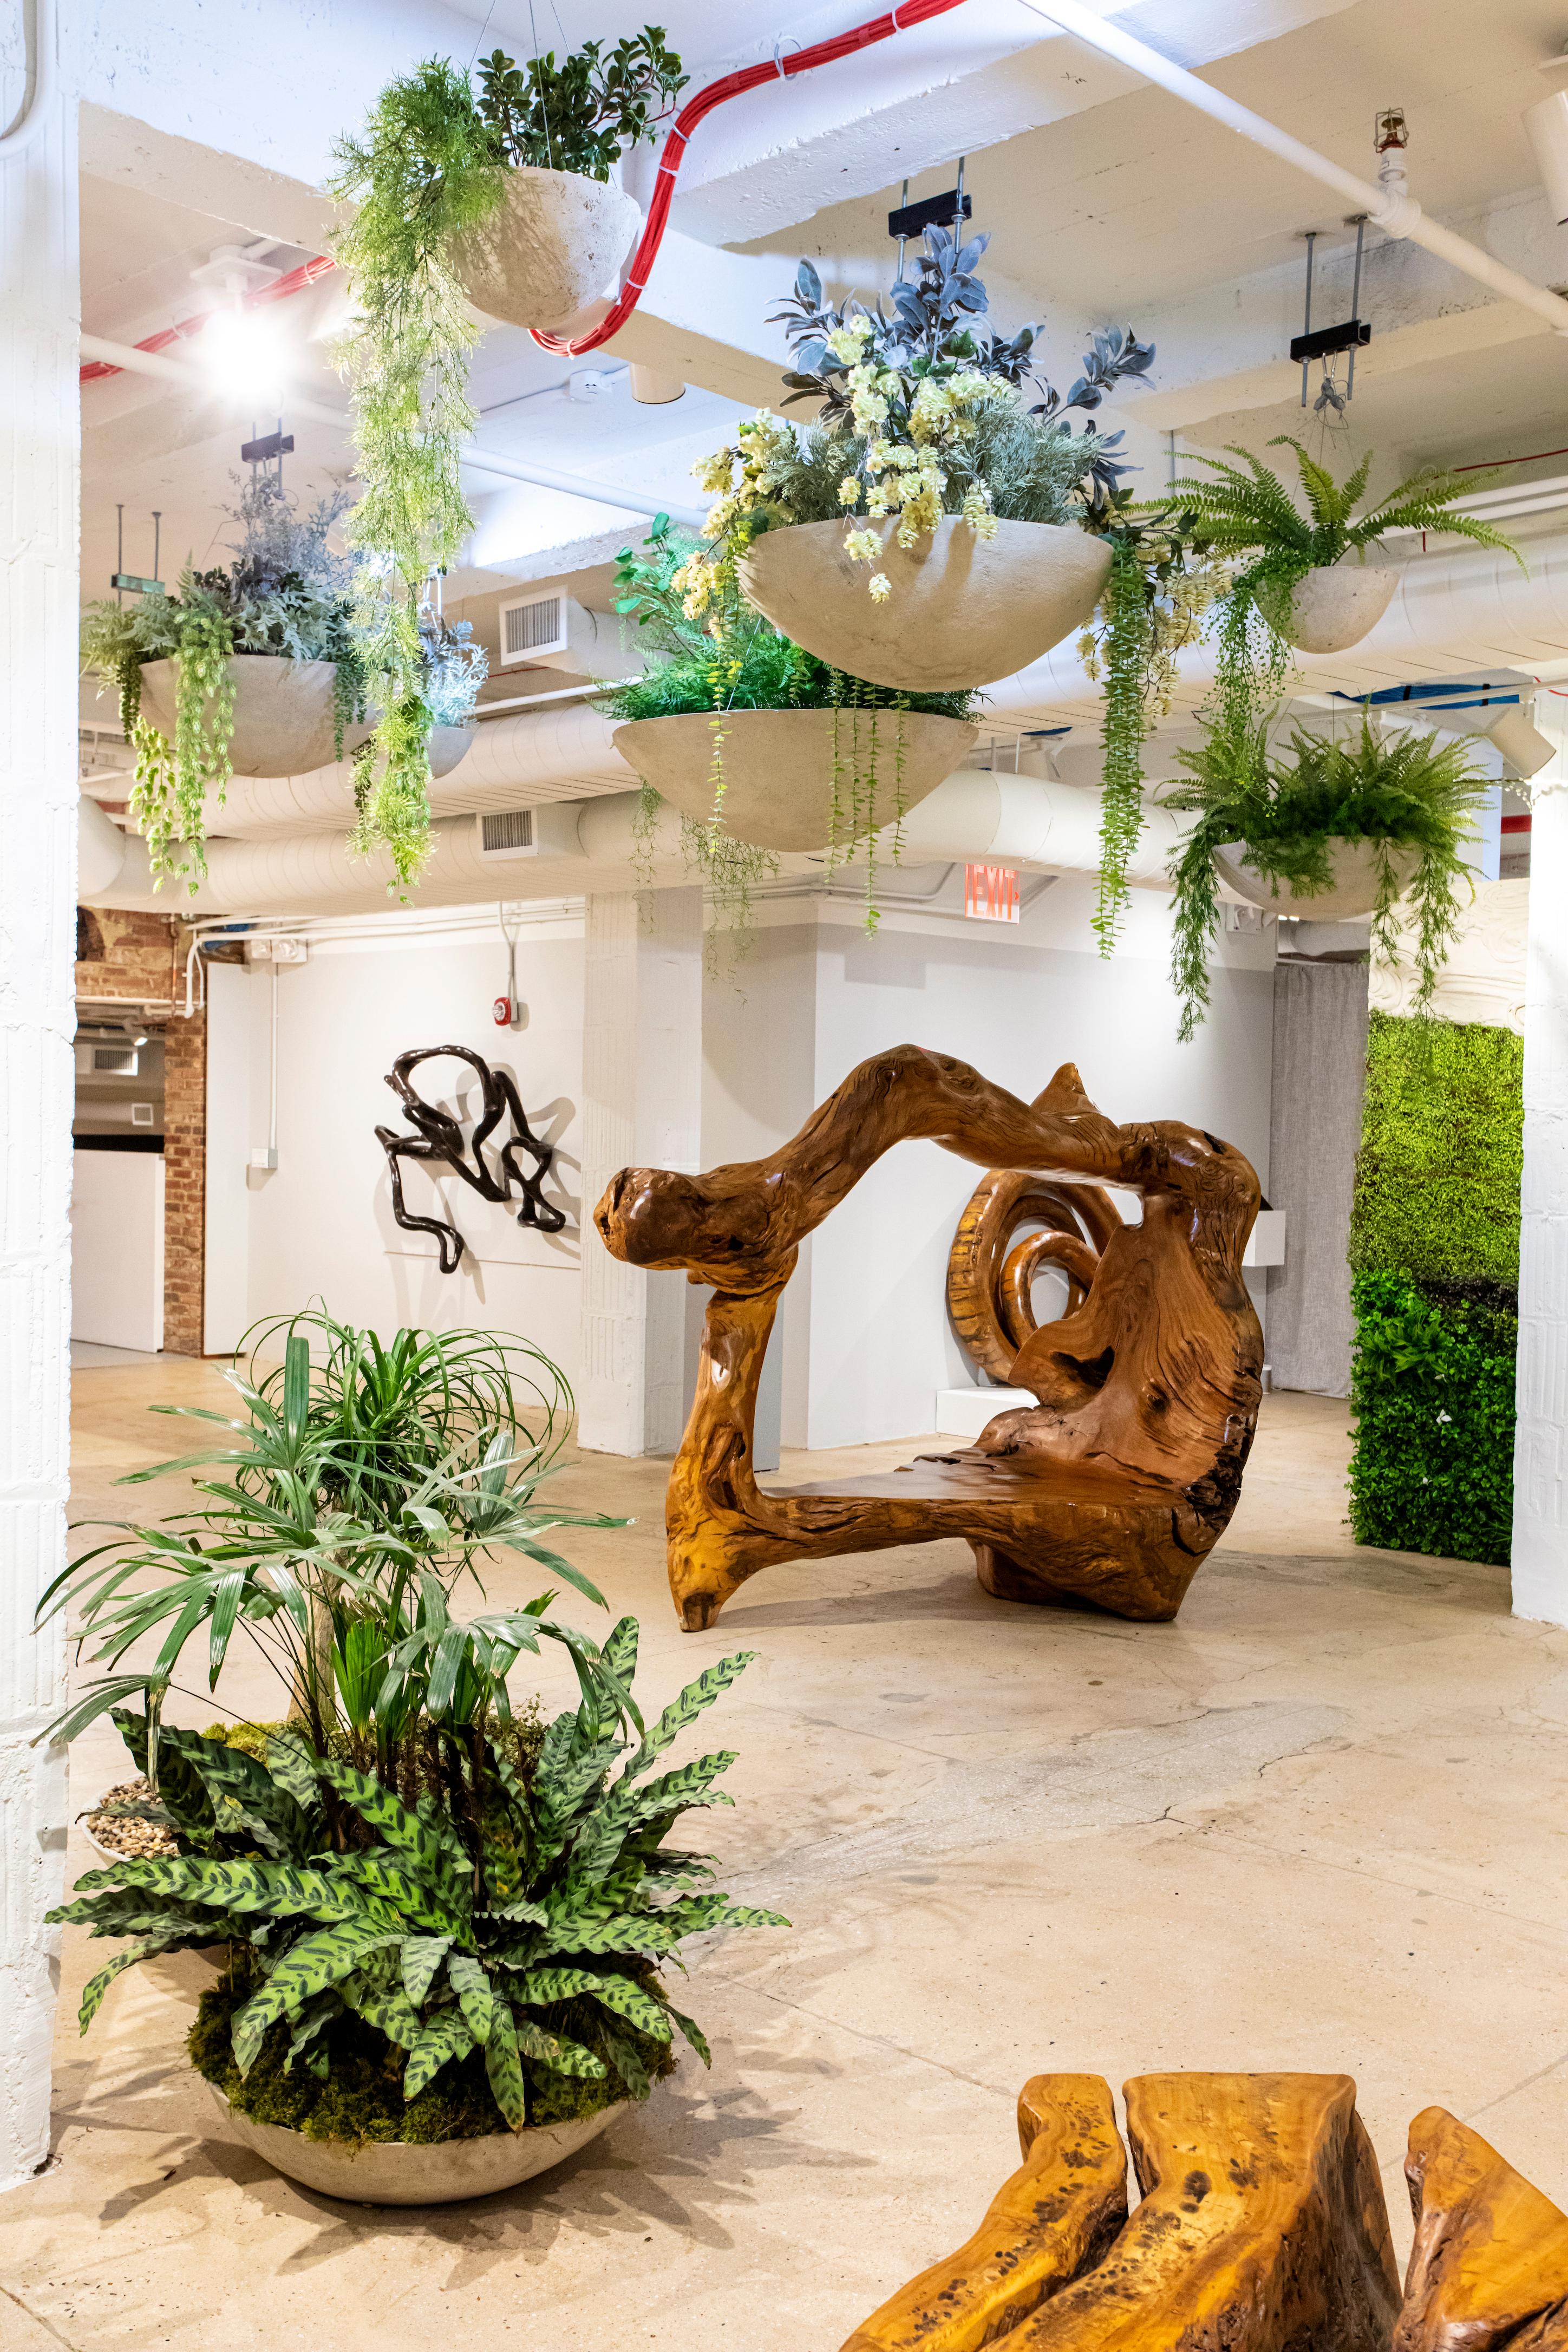 Opiary est un studio de conception et de production biophilique basé à Brooklyn. Nous intégrons la nature dans chacune de nos créations, en incorporant de la verdure vivante et des formes organiques dans des meubles, des jardinières et des